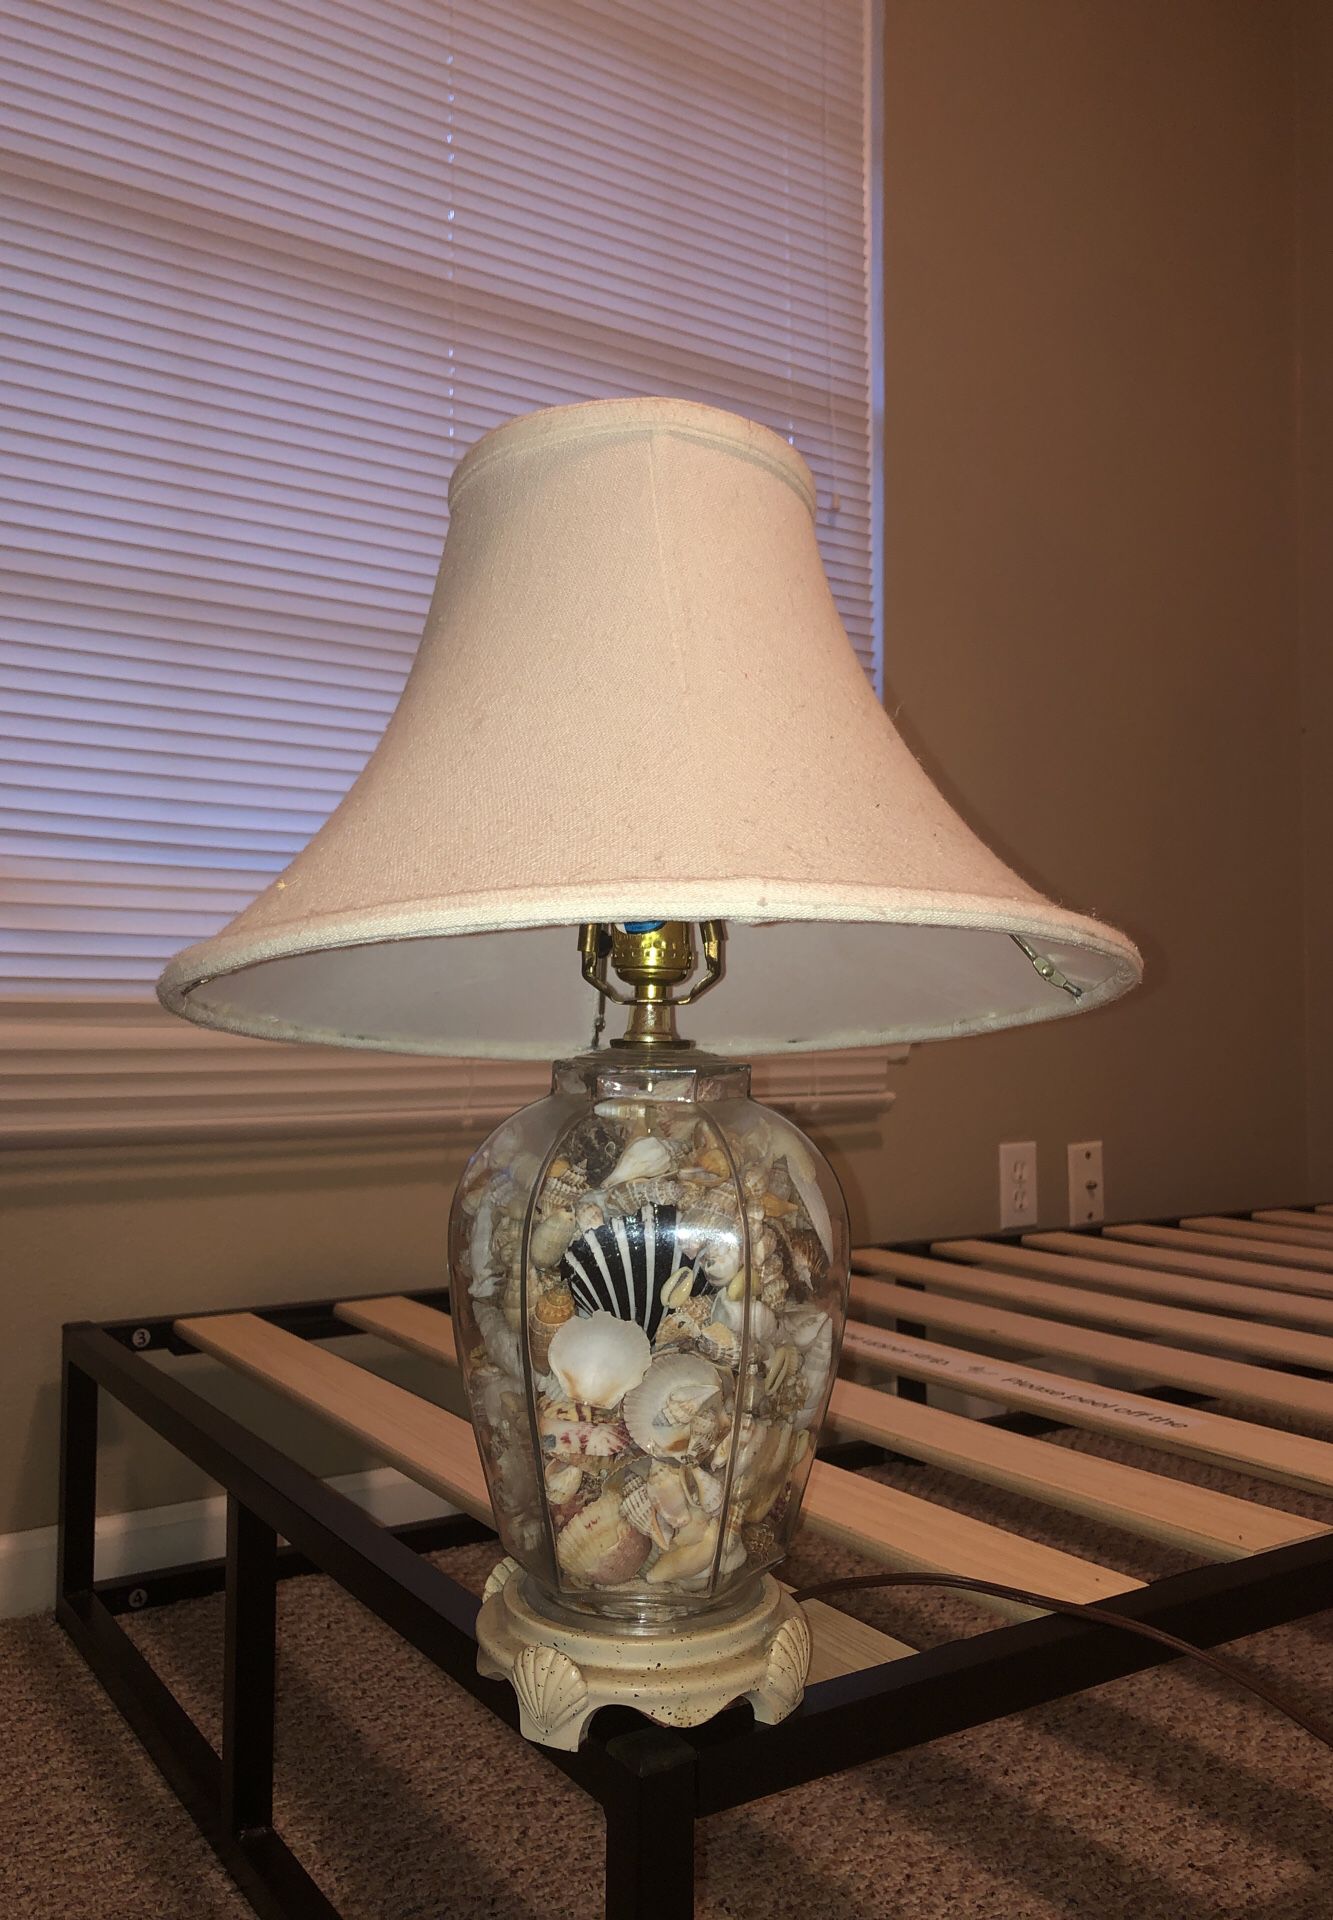 Sea shell lamp